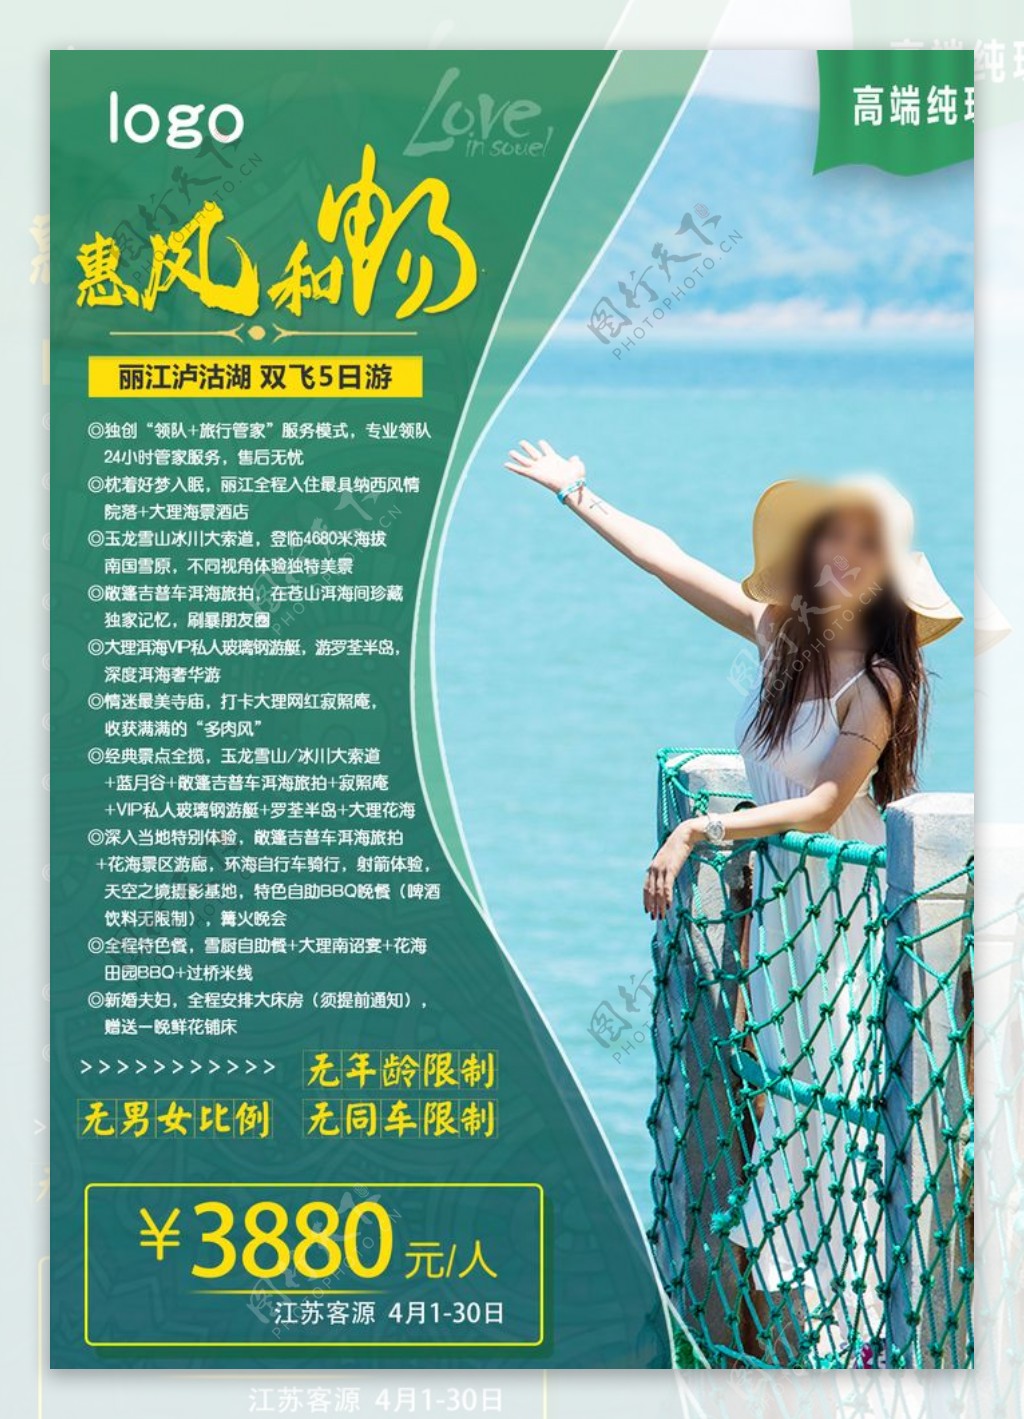 泸沽湖旅游社宣传海报丽